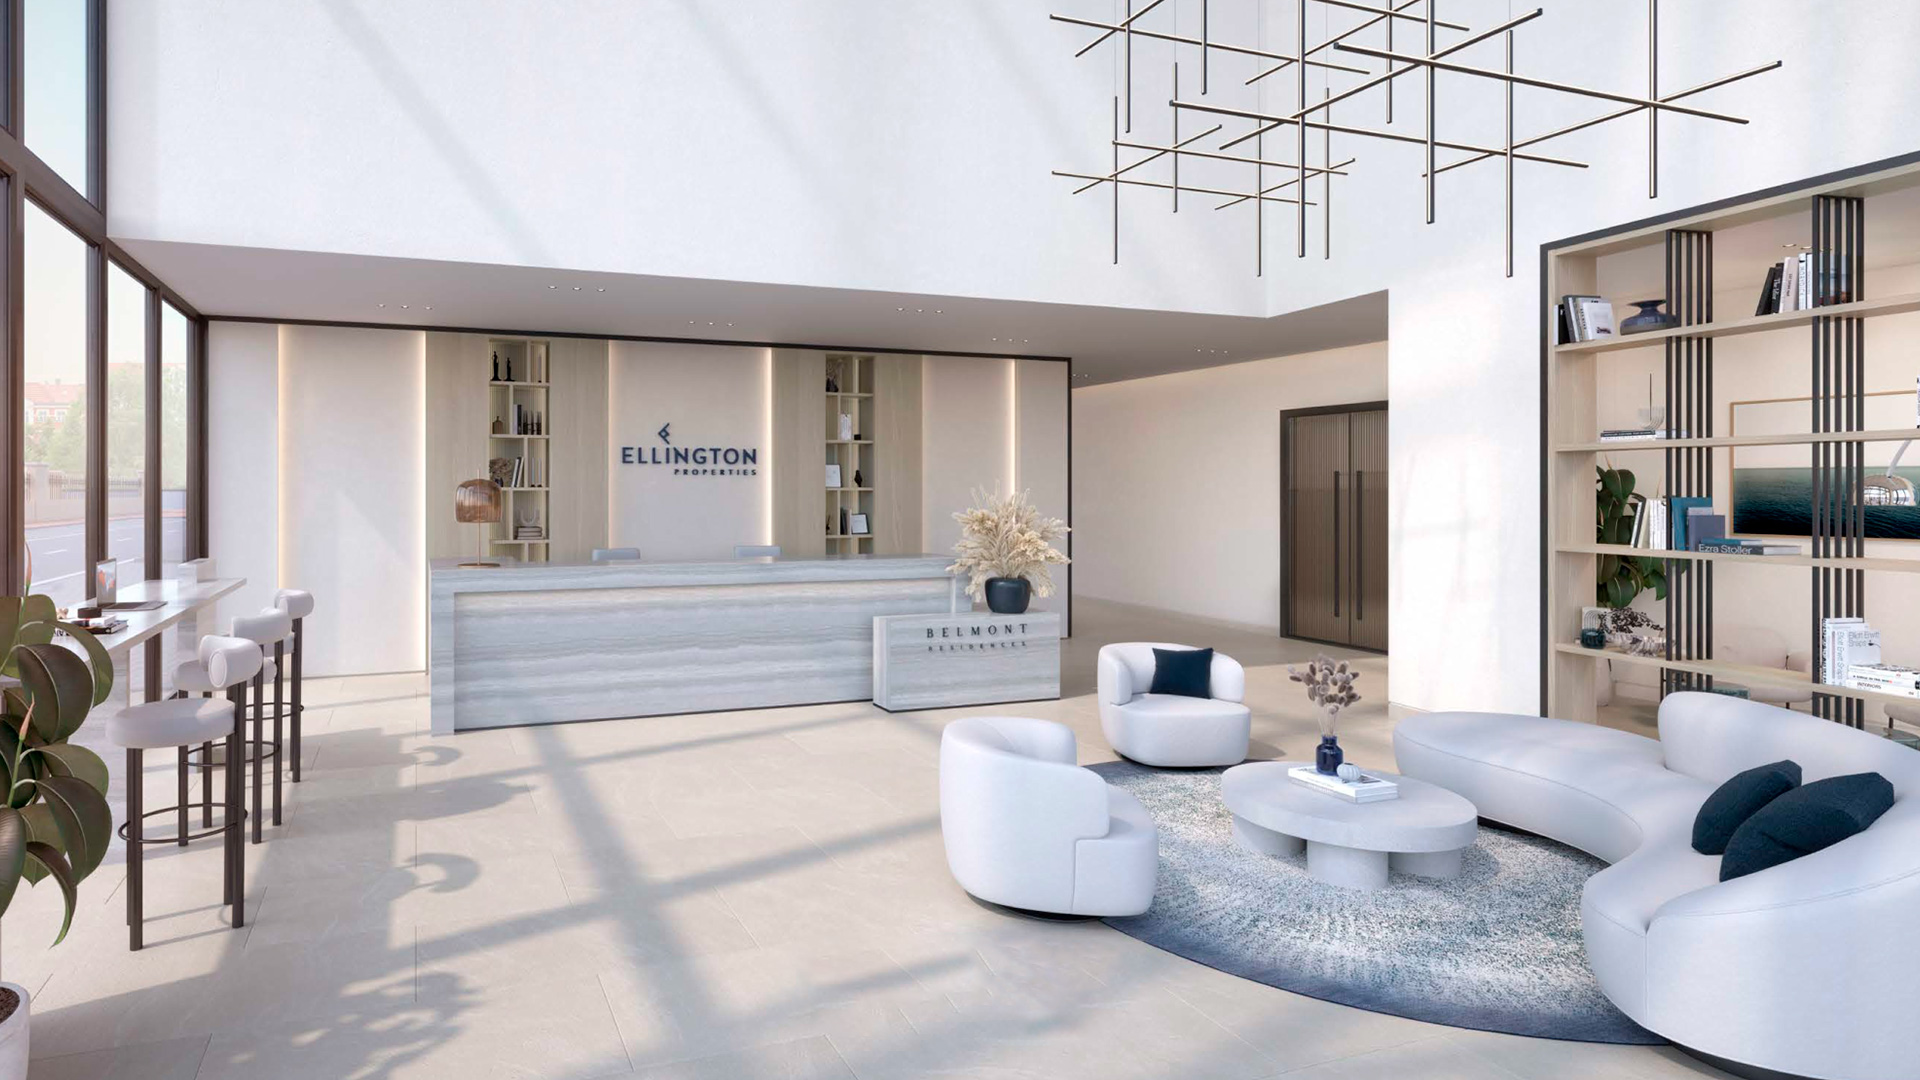 میں Jumeirah Village Triangle، Dubai، متحدہ عرب اماراتBELMONT RESIDENCE کی طرف سے Ellington Properties  - 5